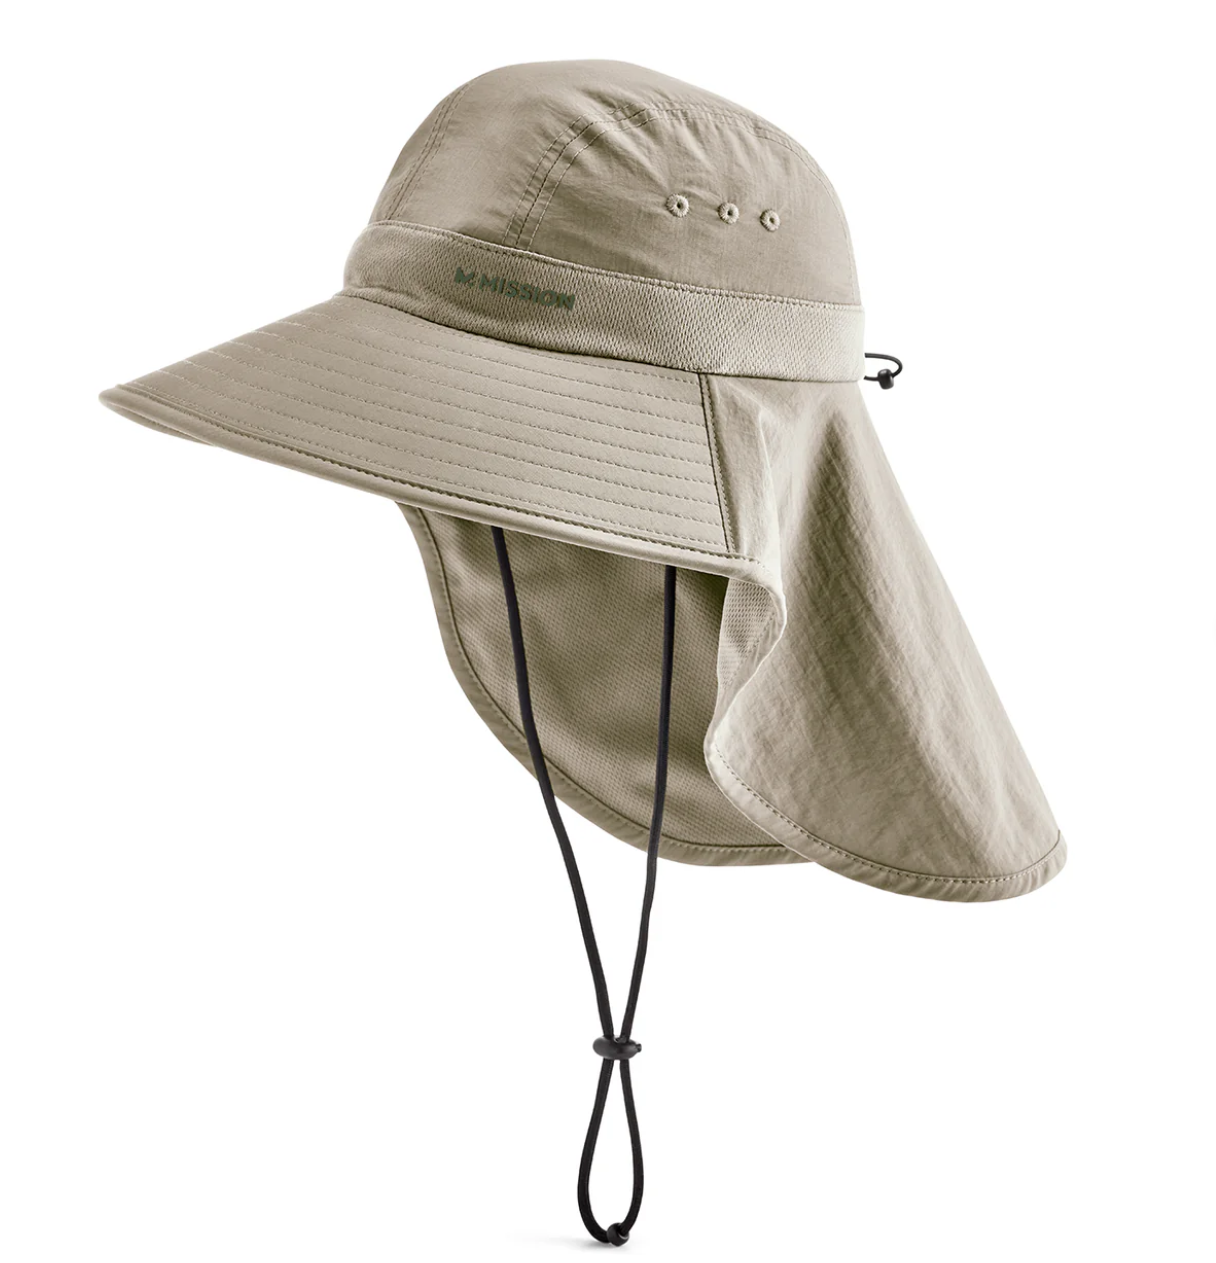 MISSION Cooling Sun Defender Hat - Color Oatmeal